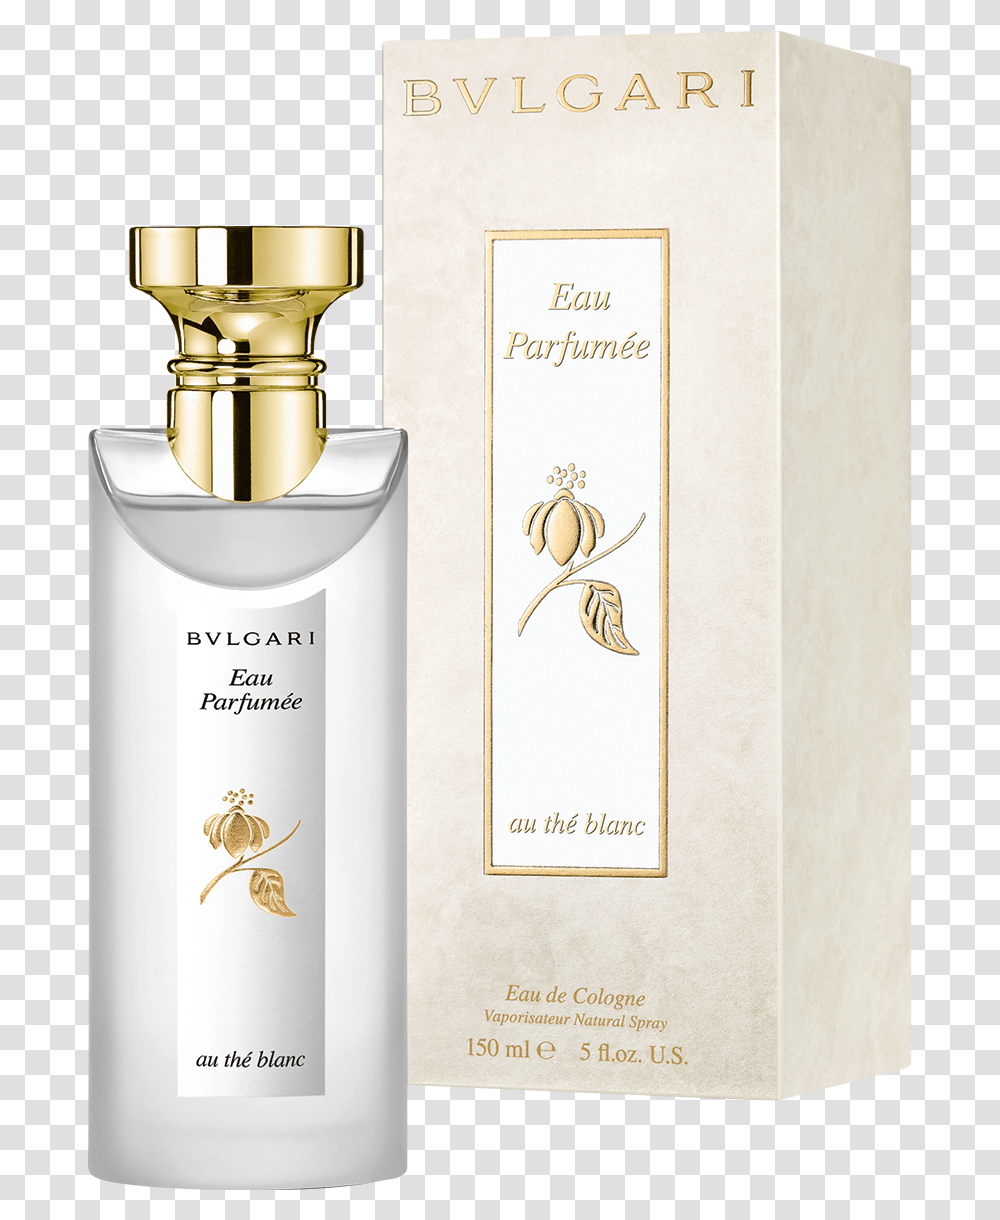 Eau Parfume Au Th Blanc Eau De Cologne Spray 150ml Bvlgari Eau De Parfum The Blanc, Bottle, Perfume, Cosmetics, Label Transparent Png